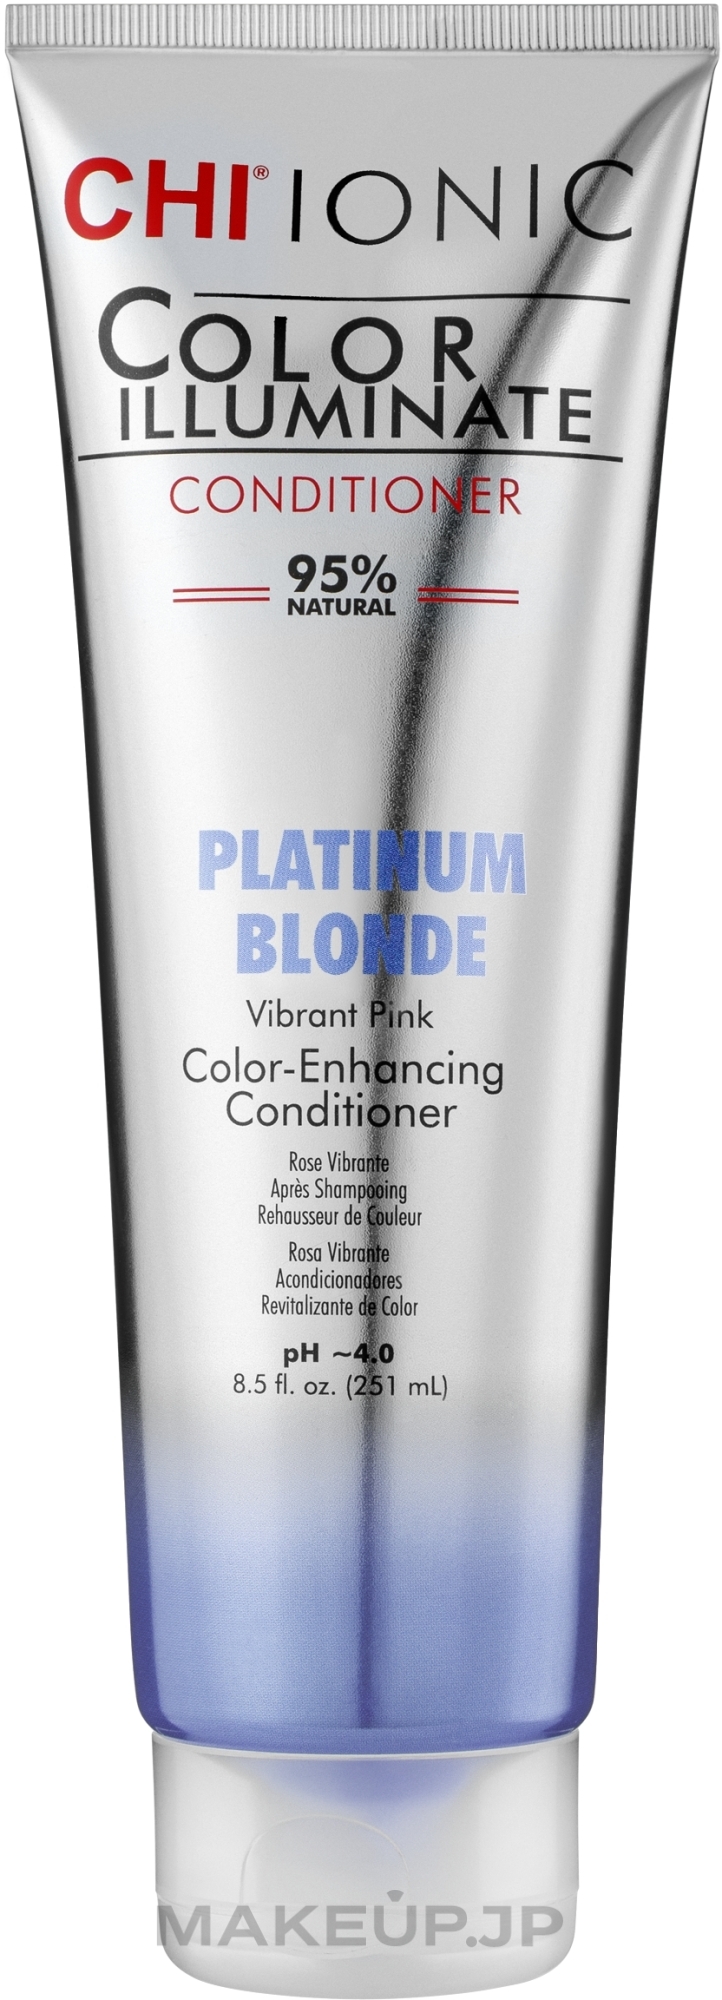 Tinted Conditioner - CHI Ionic Color Illuminate Conditioner — photo Platinum Blonde